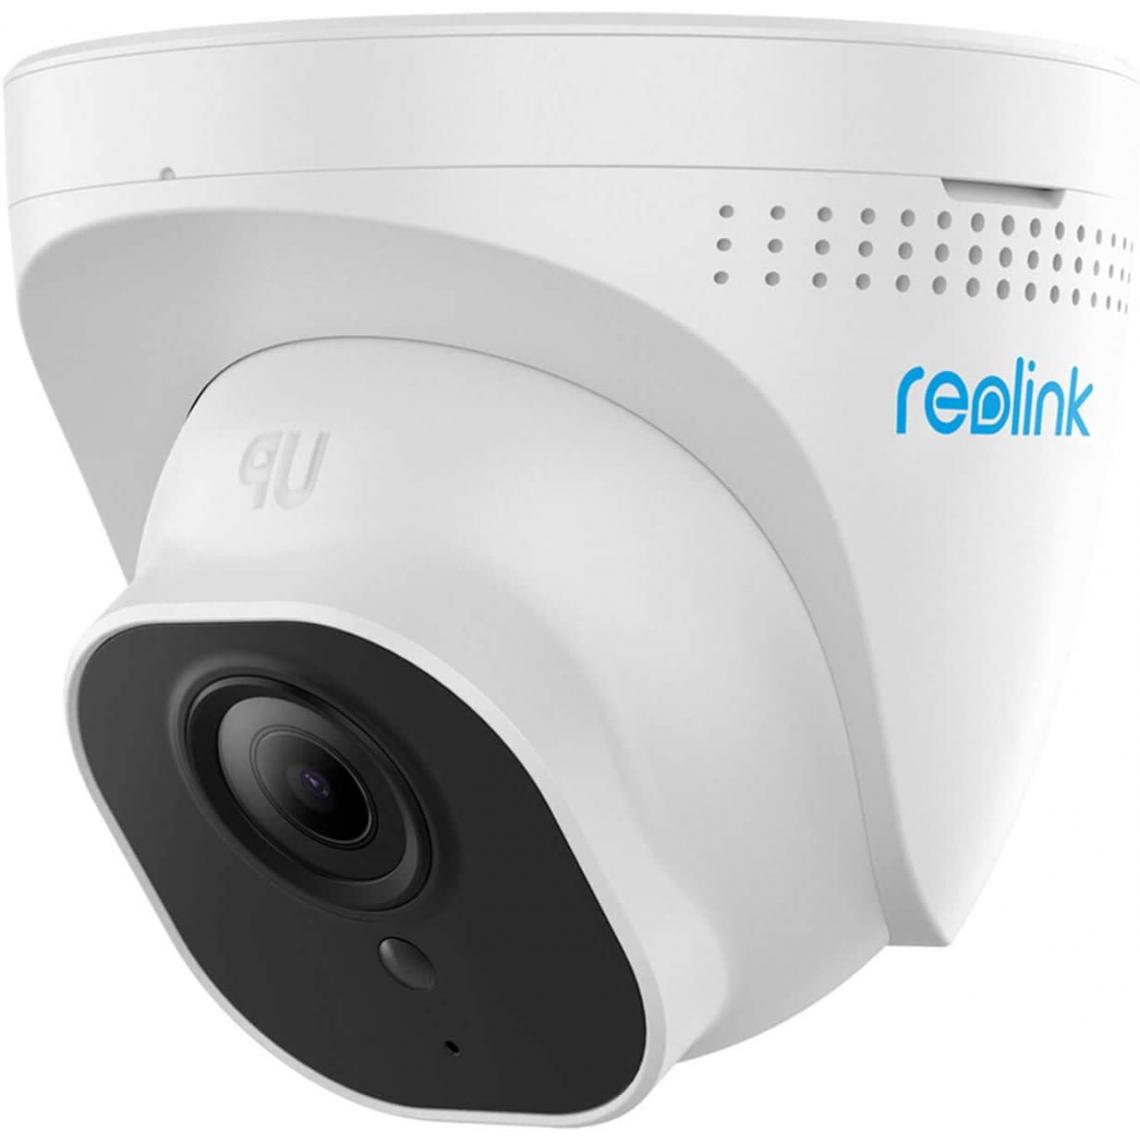 Reolink - Caméra de Surveillance Extérieure 5MP PoE Dôme - RLC-520-5MP Caméra IP Vision Nocturne IR 30m, Détection de Mouvement Etanche - Caméra de surveillance connectée